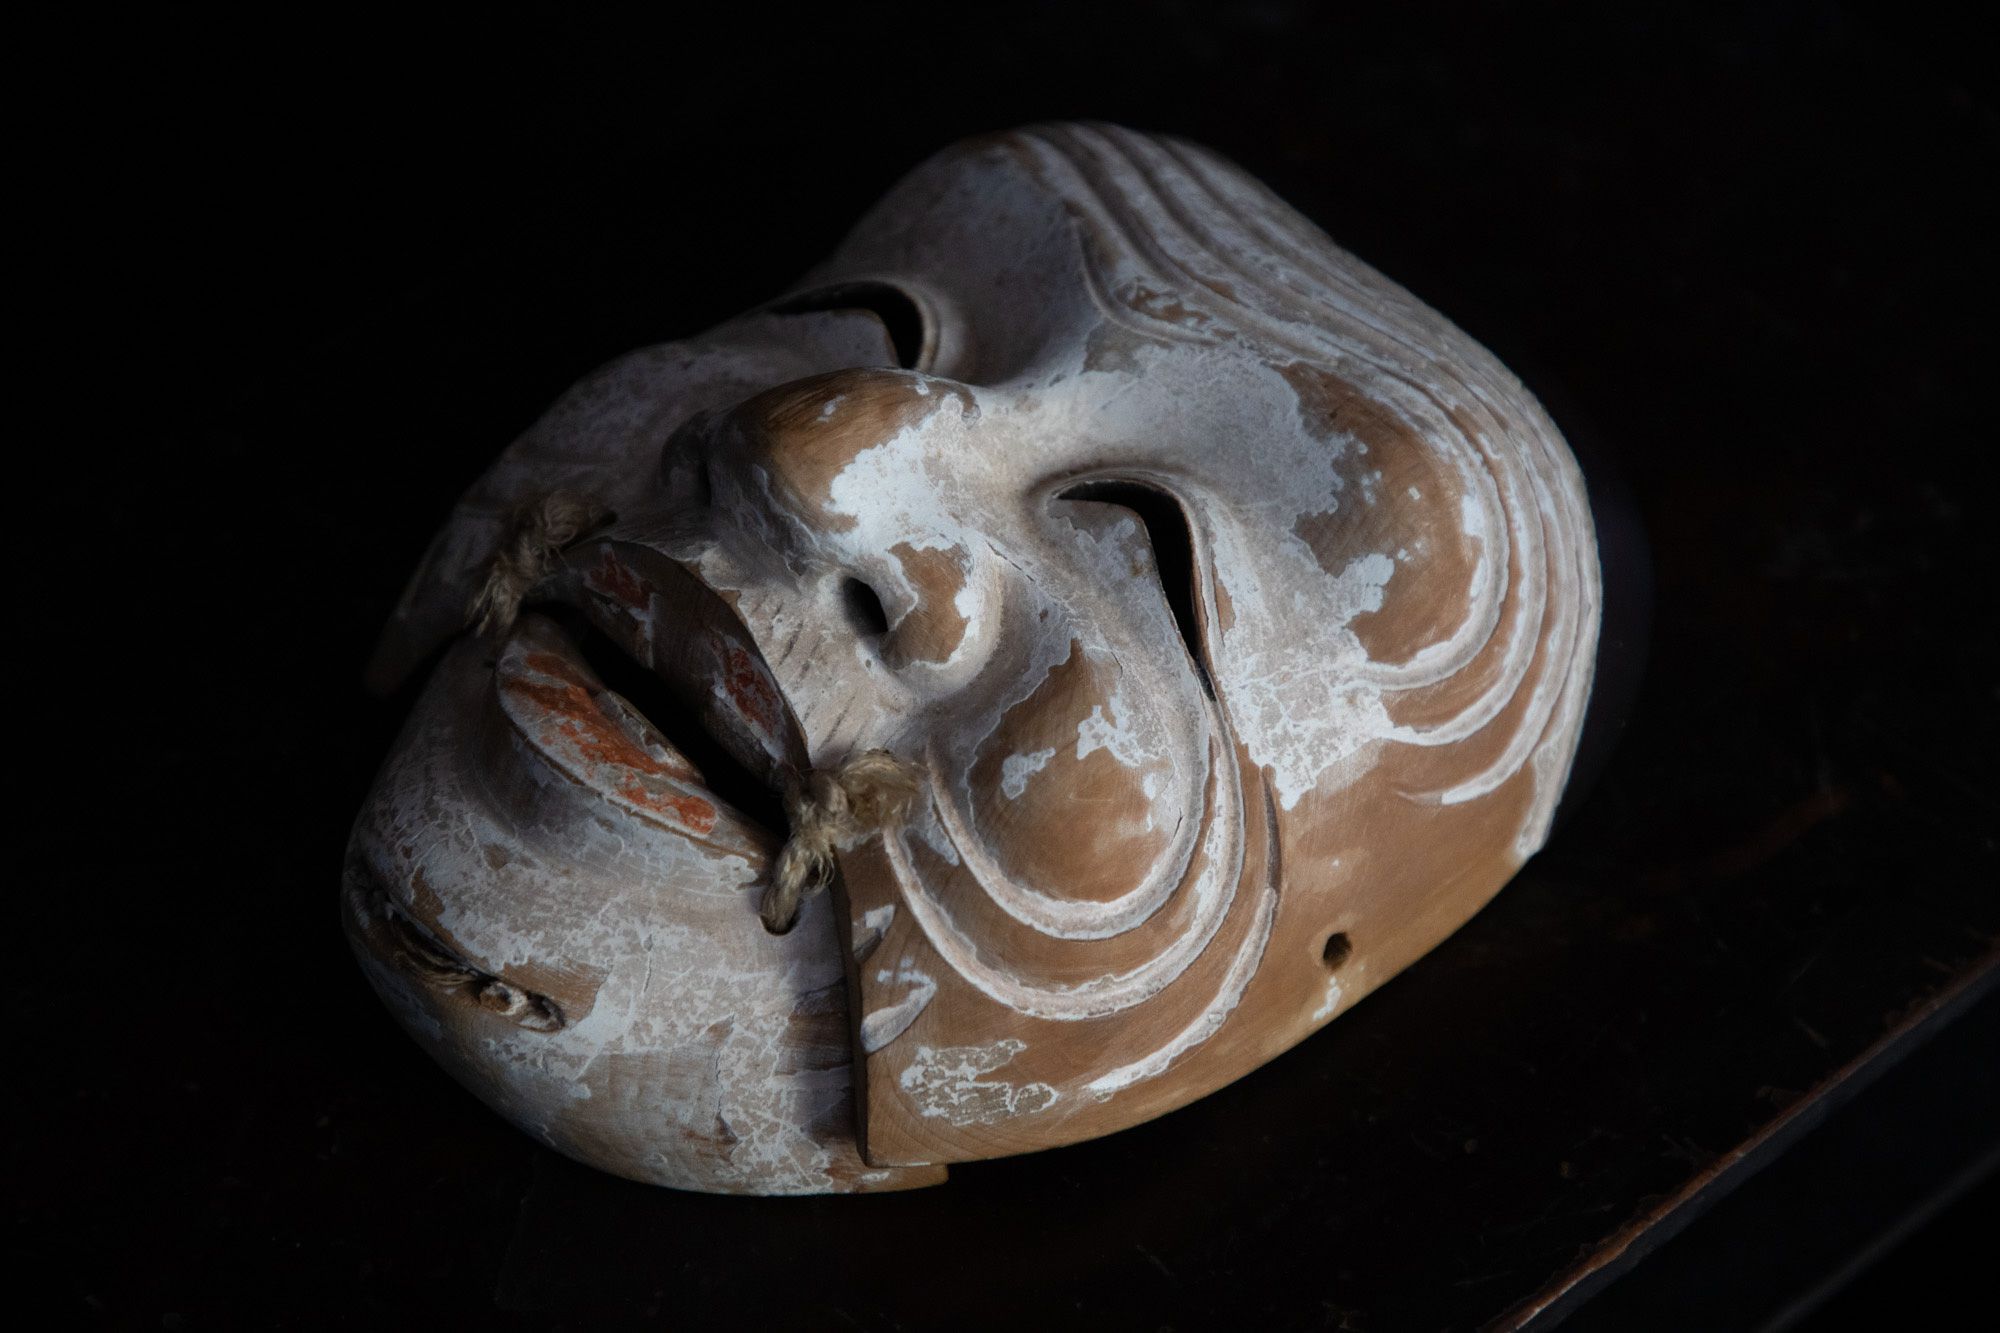 談山神社で発見された摩陀羅神面は、通常の翁面よりも大きく、頬の肉付きが強調されている。